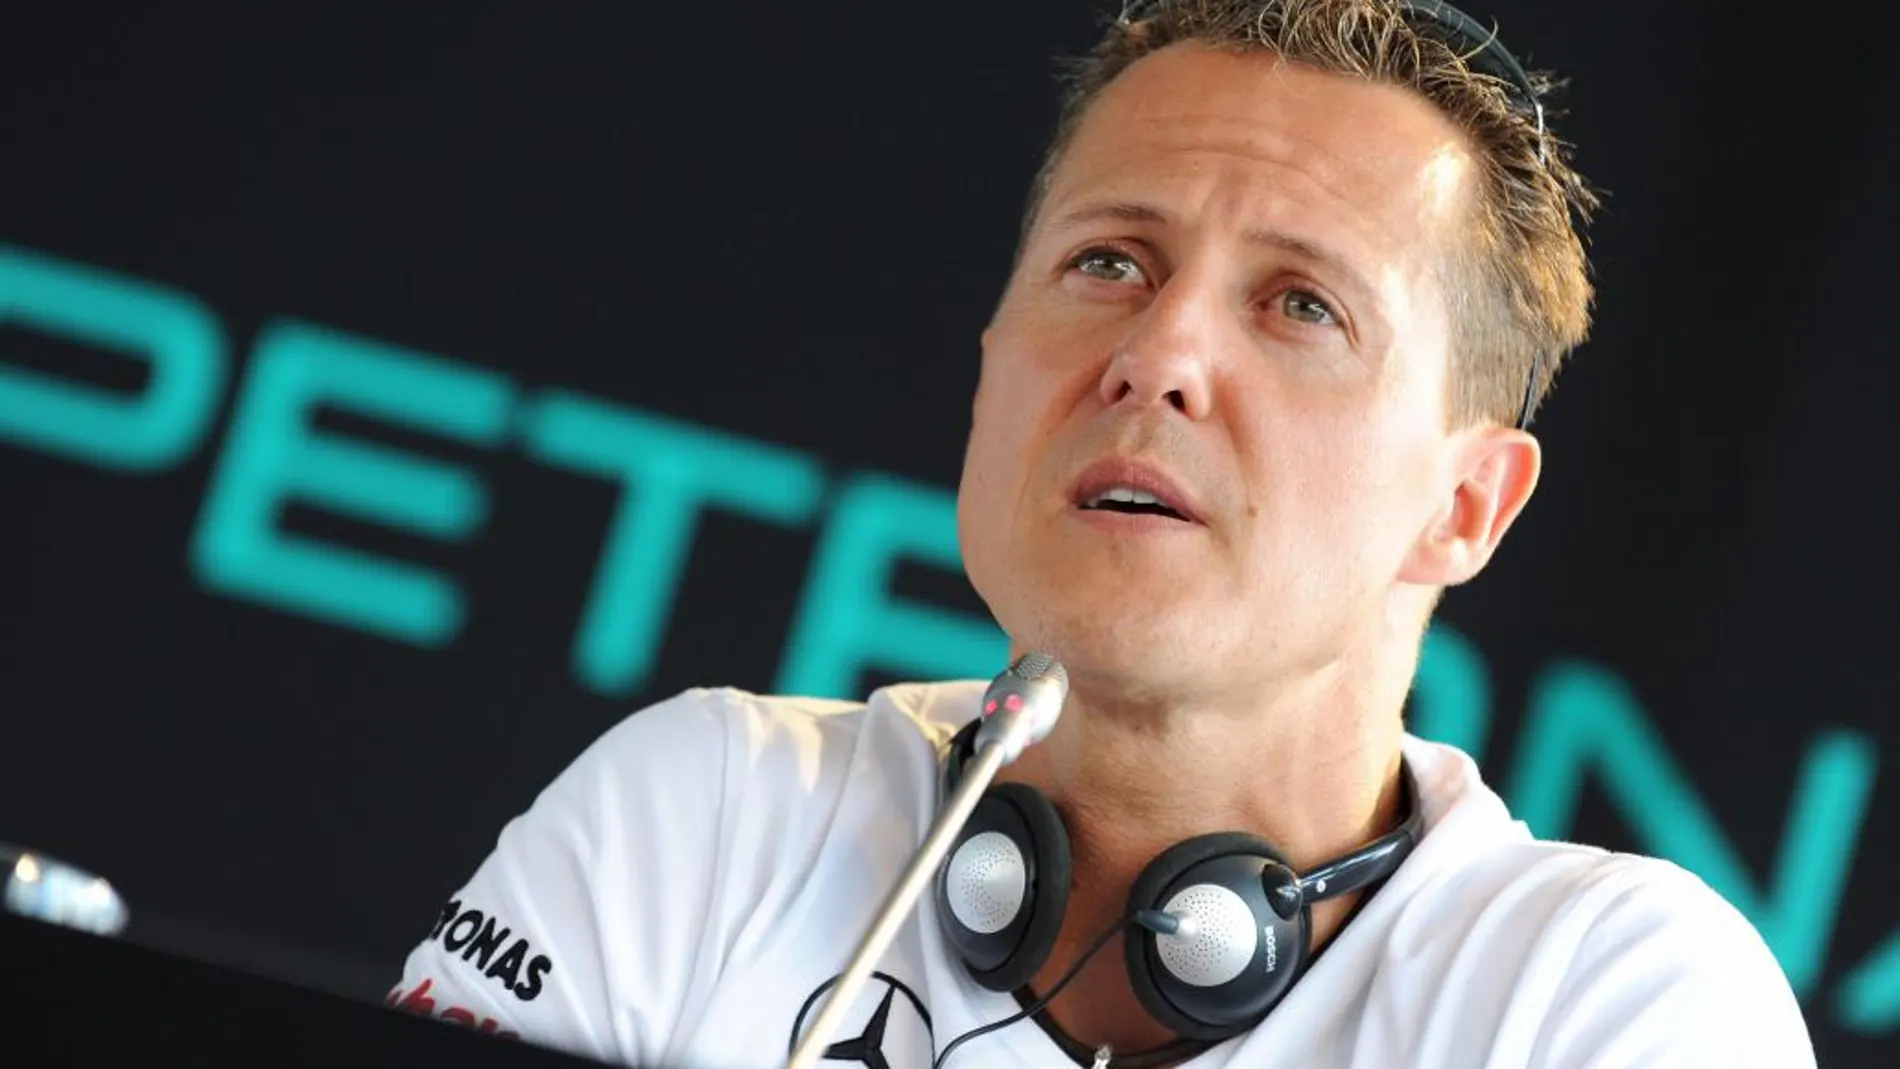 Imagen de 2010 de Michael Schumacher